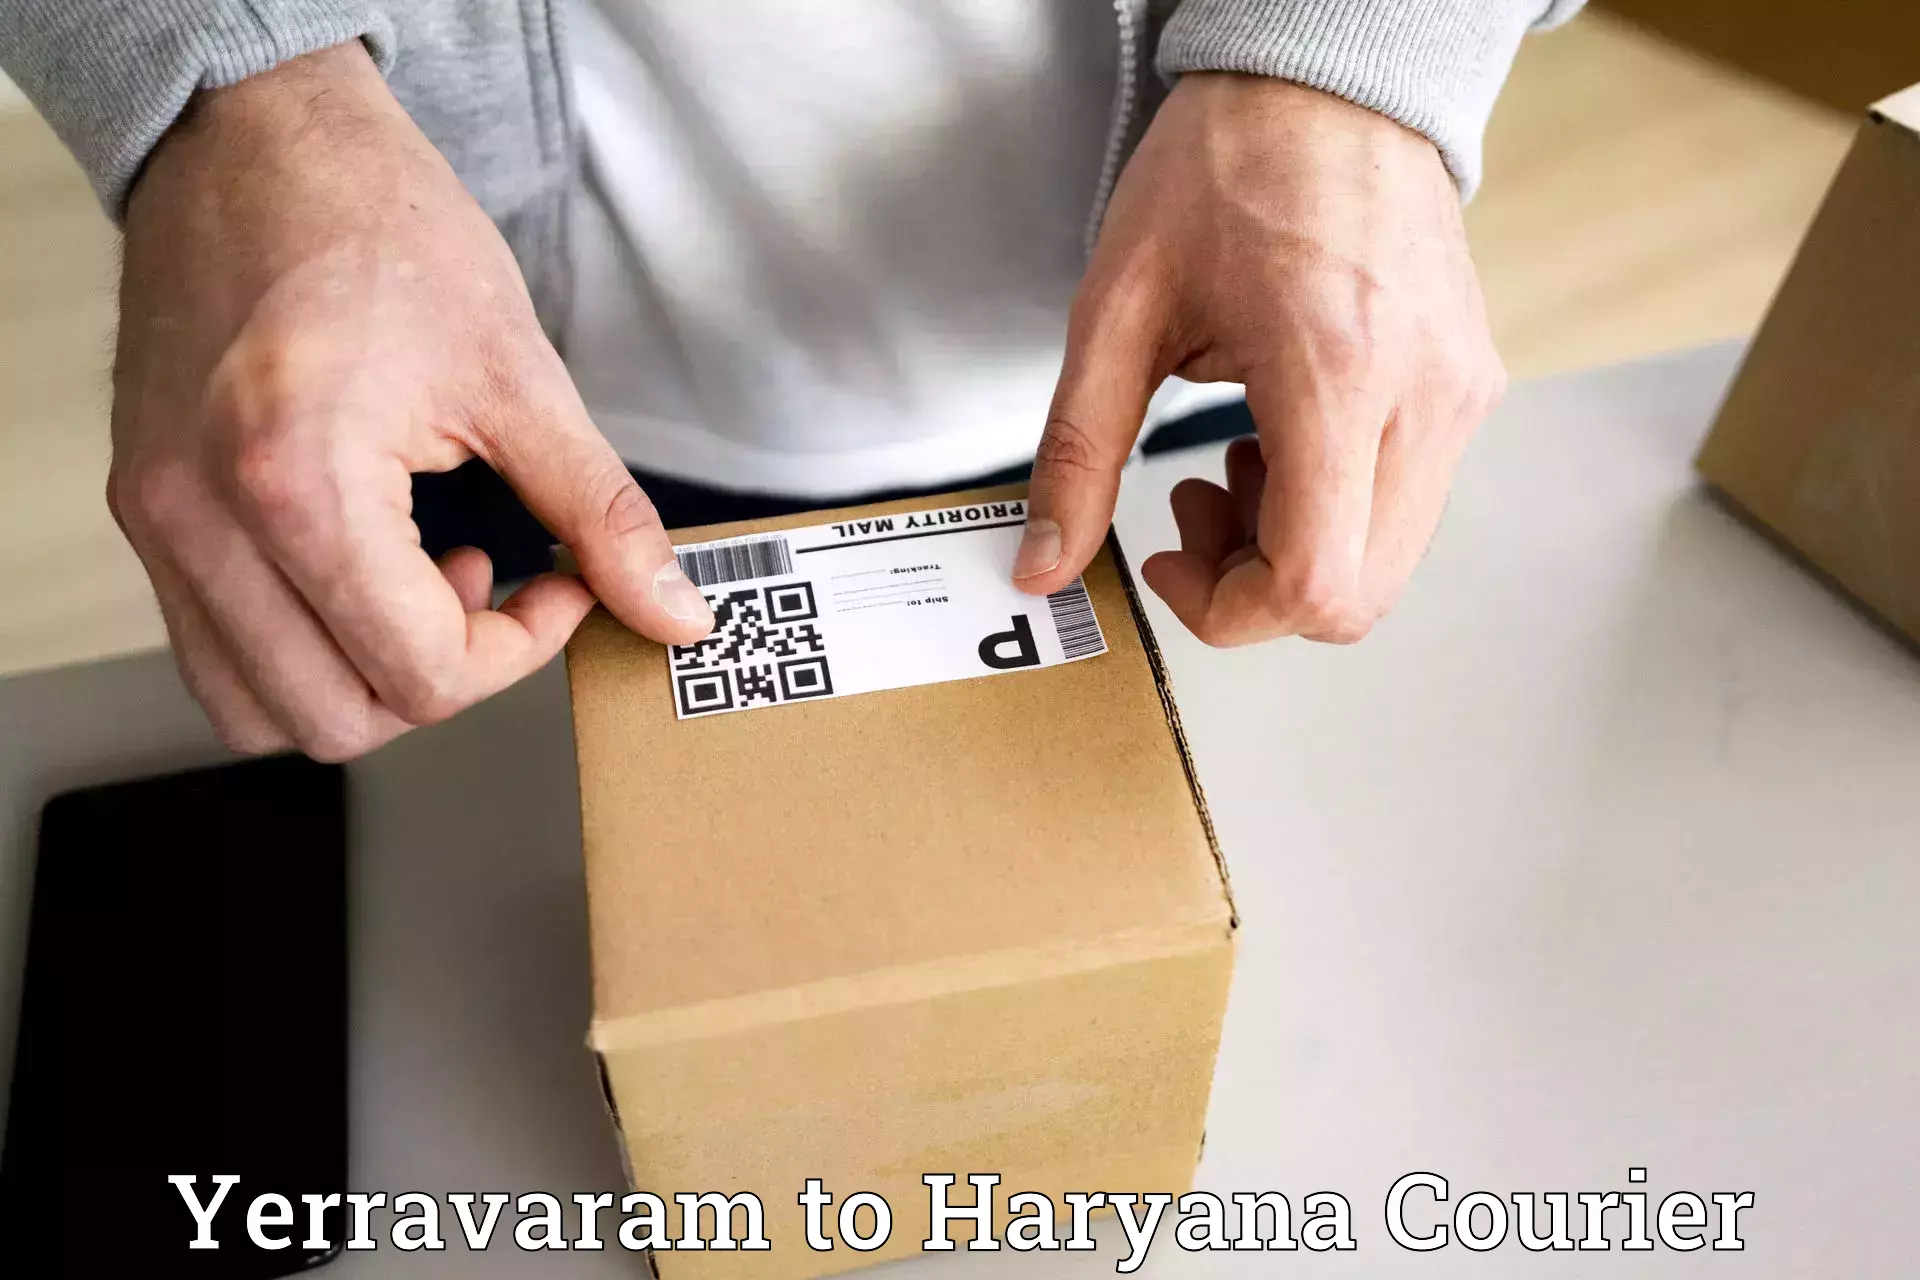 Efficient logistics management Yerravaram to Panchkula